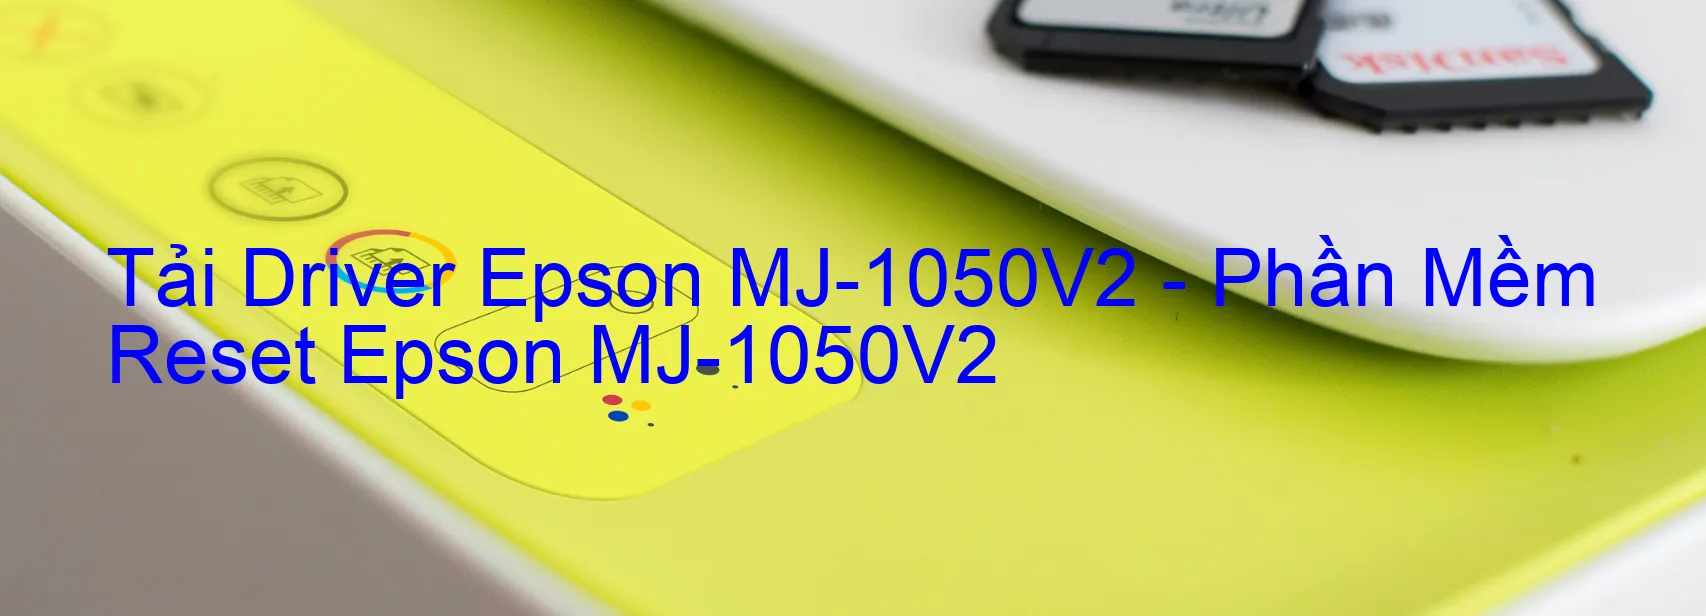 Driver Epson MJ-1050V2, Phần Mềm Reset Epson MJ-1050V2